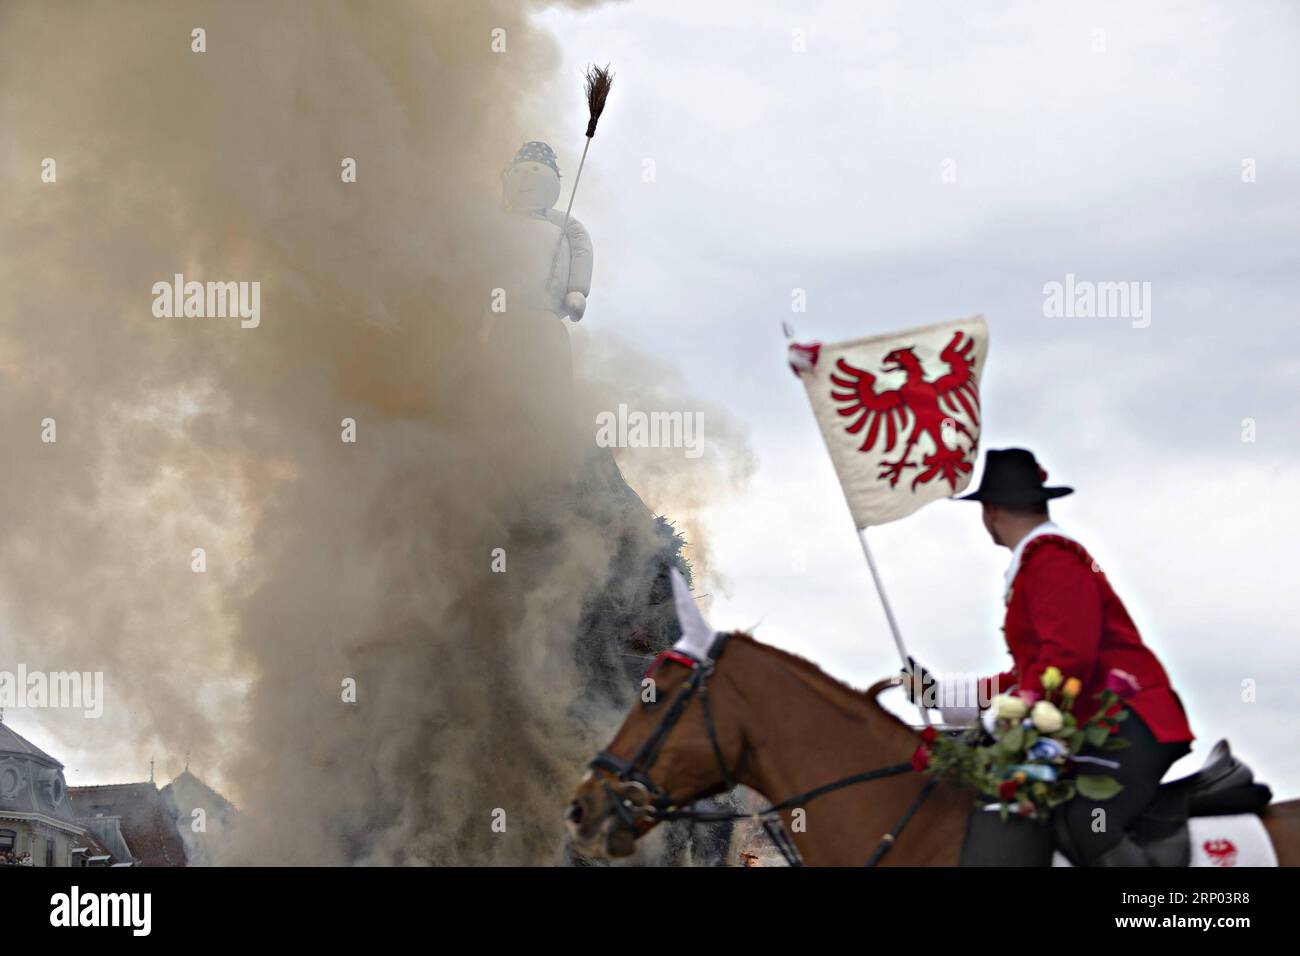 (180416) -- ZURIGO (SVIZZERA), 16 aprile 2018 -- Un gildsman cavalca un cavallo intorno a un pupazzo di neve simbolico durante il Sechselauten, un festival primaverile locale, a Zurigo, in Svizzera, il 16 aprile 2018. Il Sechselauten è una festa tradizionale che segna la fine dell'inverno con una sfilata di gilde in costumi storici e l'incendio di un pupazzo di neve simbolico. ) SVIZZERA-ZURIGO-SECHSELAUTEN-SPRING FESTIVAL MichelexLimina PUBLICATIONxNOTxINxCHN Foto Stock